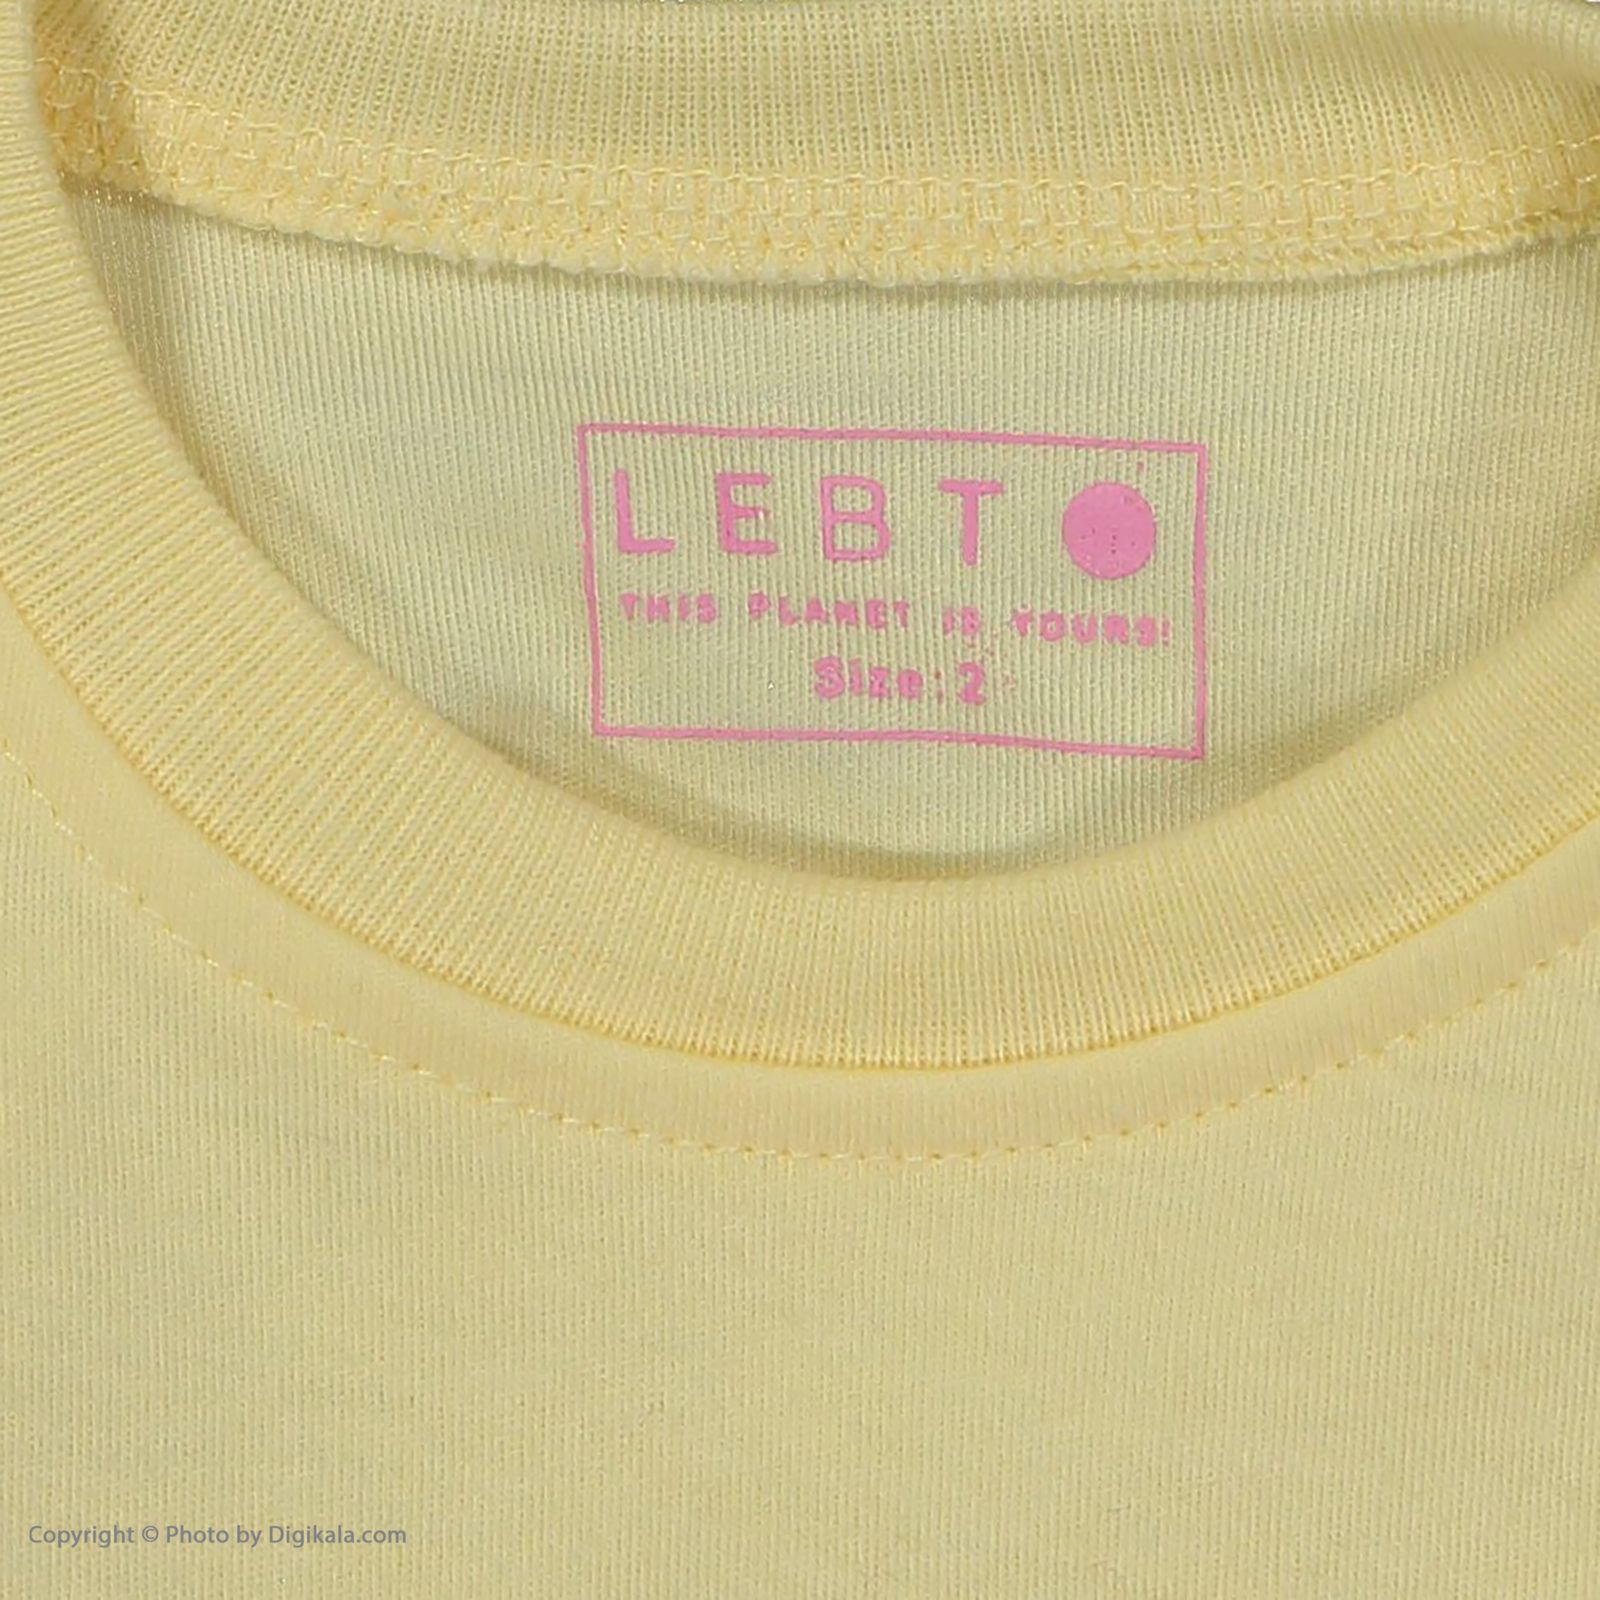 ست تی شرت و شلوار بچگانه لبتو مدل 2201892-16 -  - 7